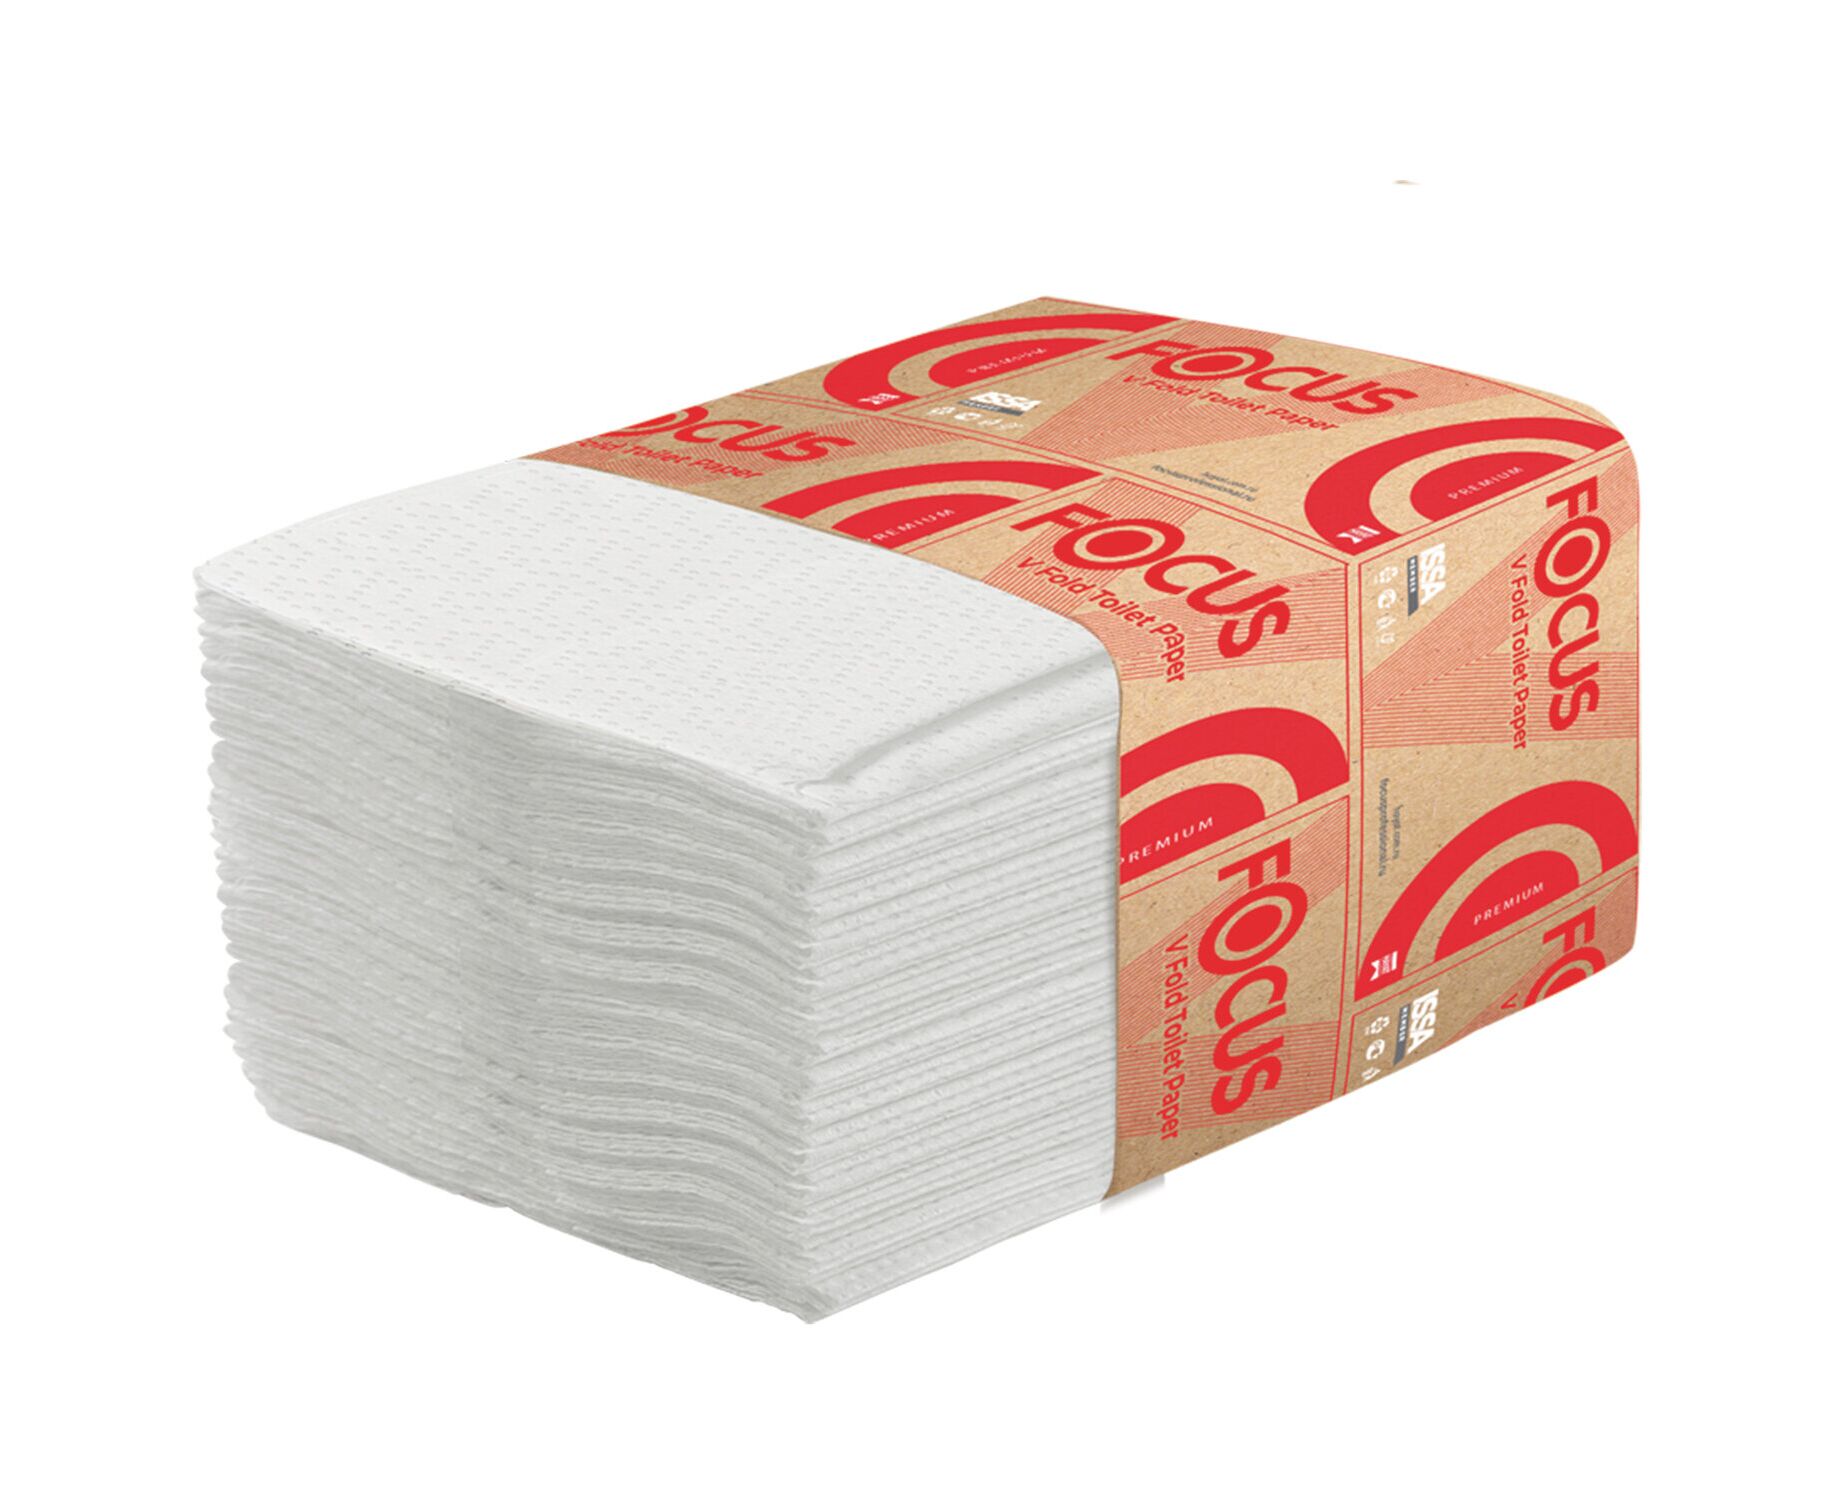 Полотенце бумажное 250 листов. Полотенца бумажные фокус v-сложения 1-сл 250 л 23 23. Туалетная бумага листовая v-сложения (250л) 2сл белая. Туалетная бумага Focus 5049979. Focus hayt бумага туалетная.